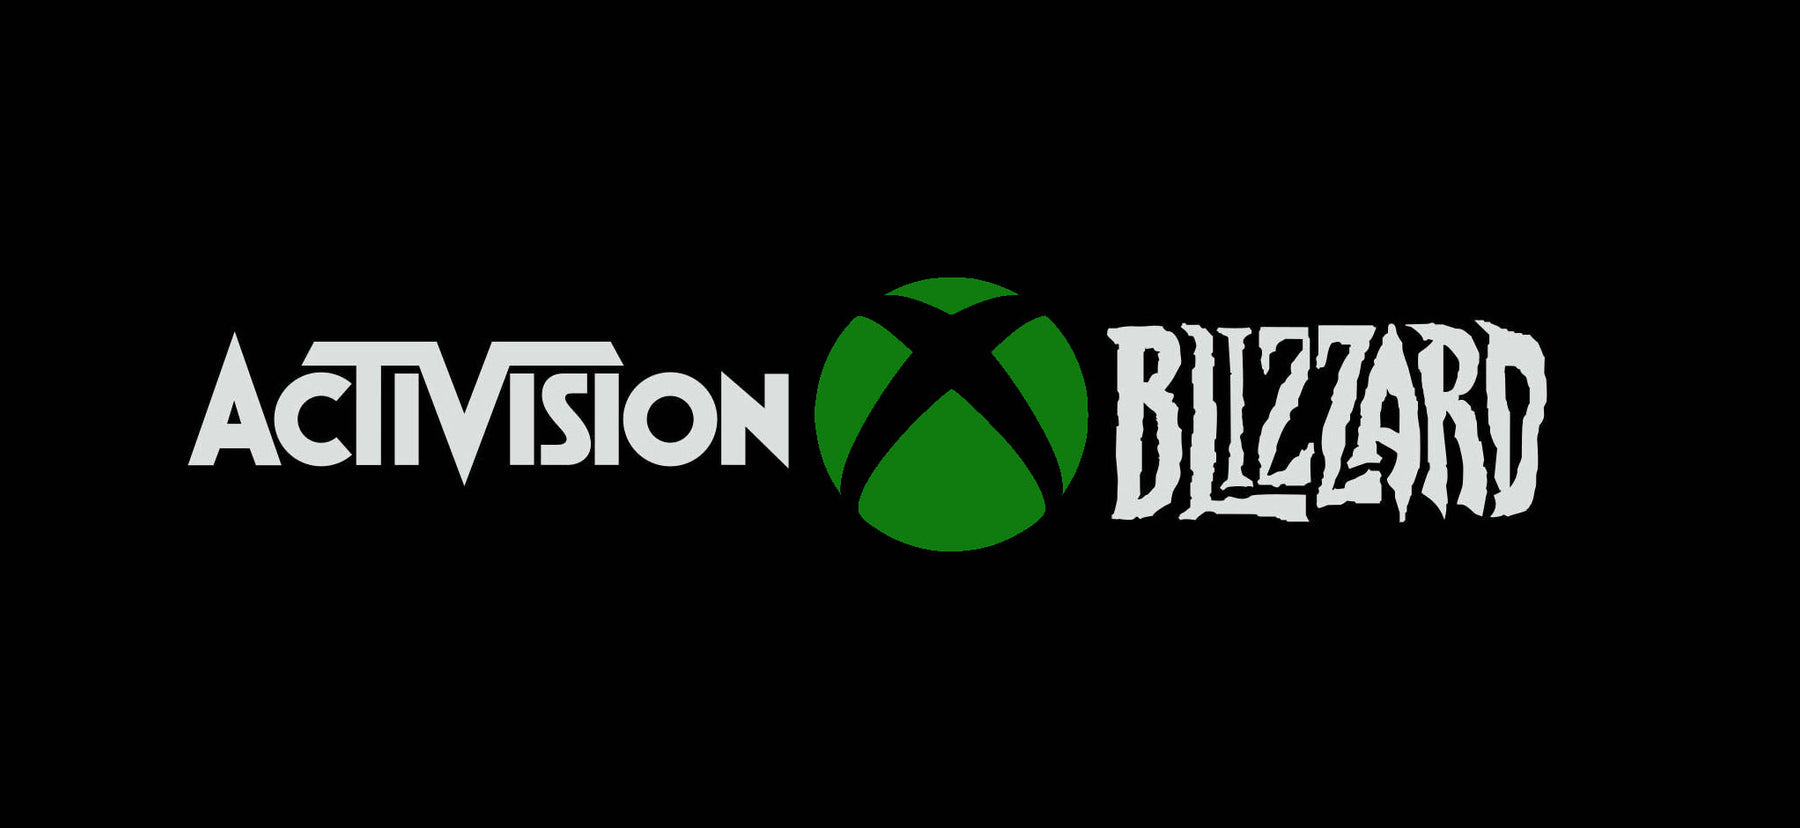 Kommer Microsoft til å kjøpe Activision Blizzard? Gamingsjappa.no